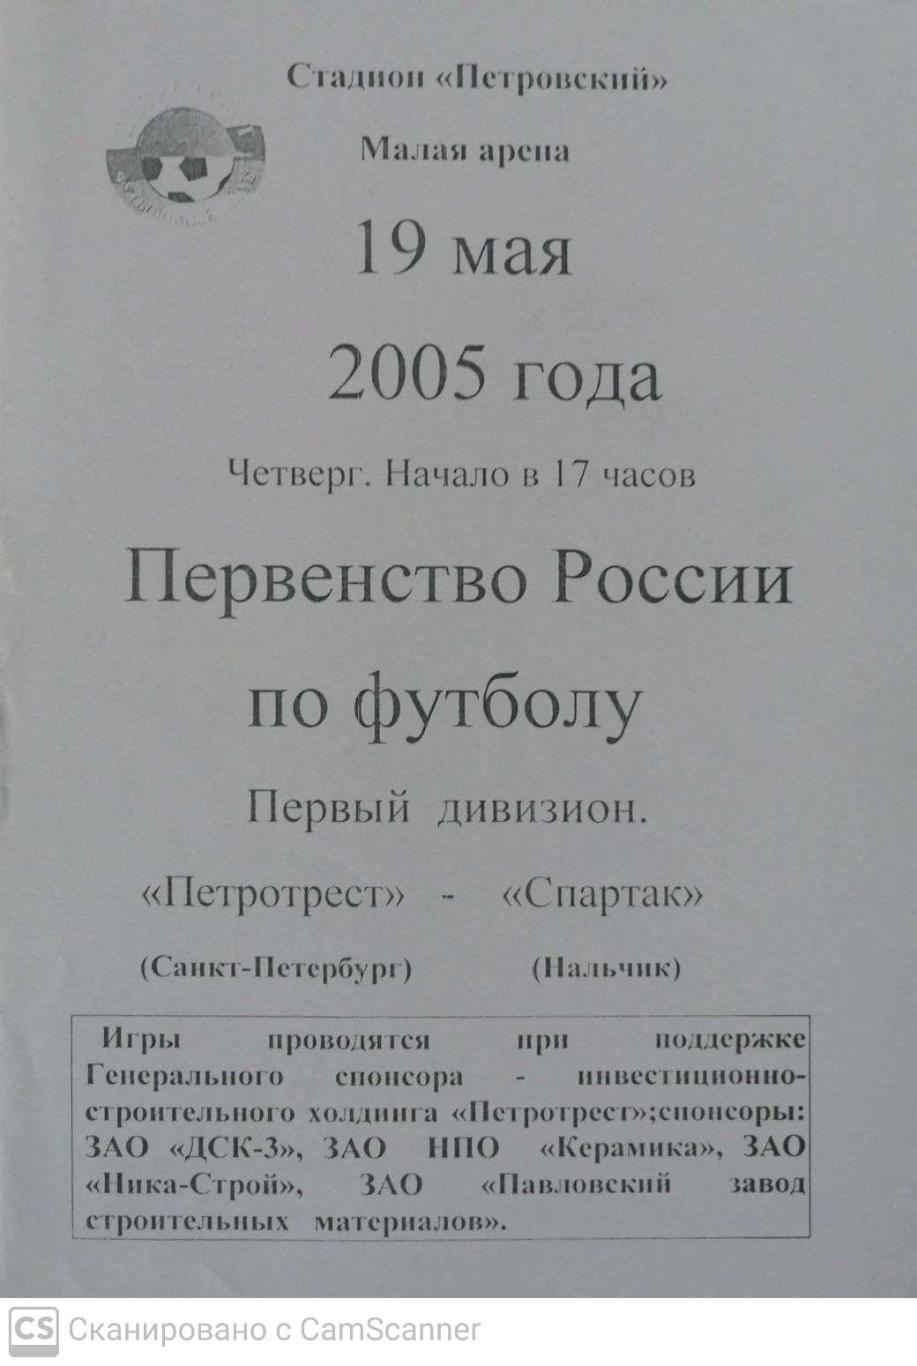 Первый дивизион. Петротрест СПб - Спартак Нальчик 19.05.2005